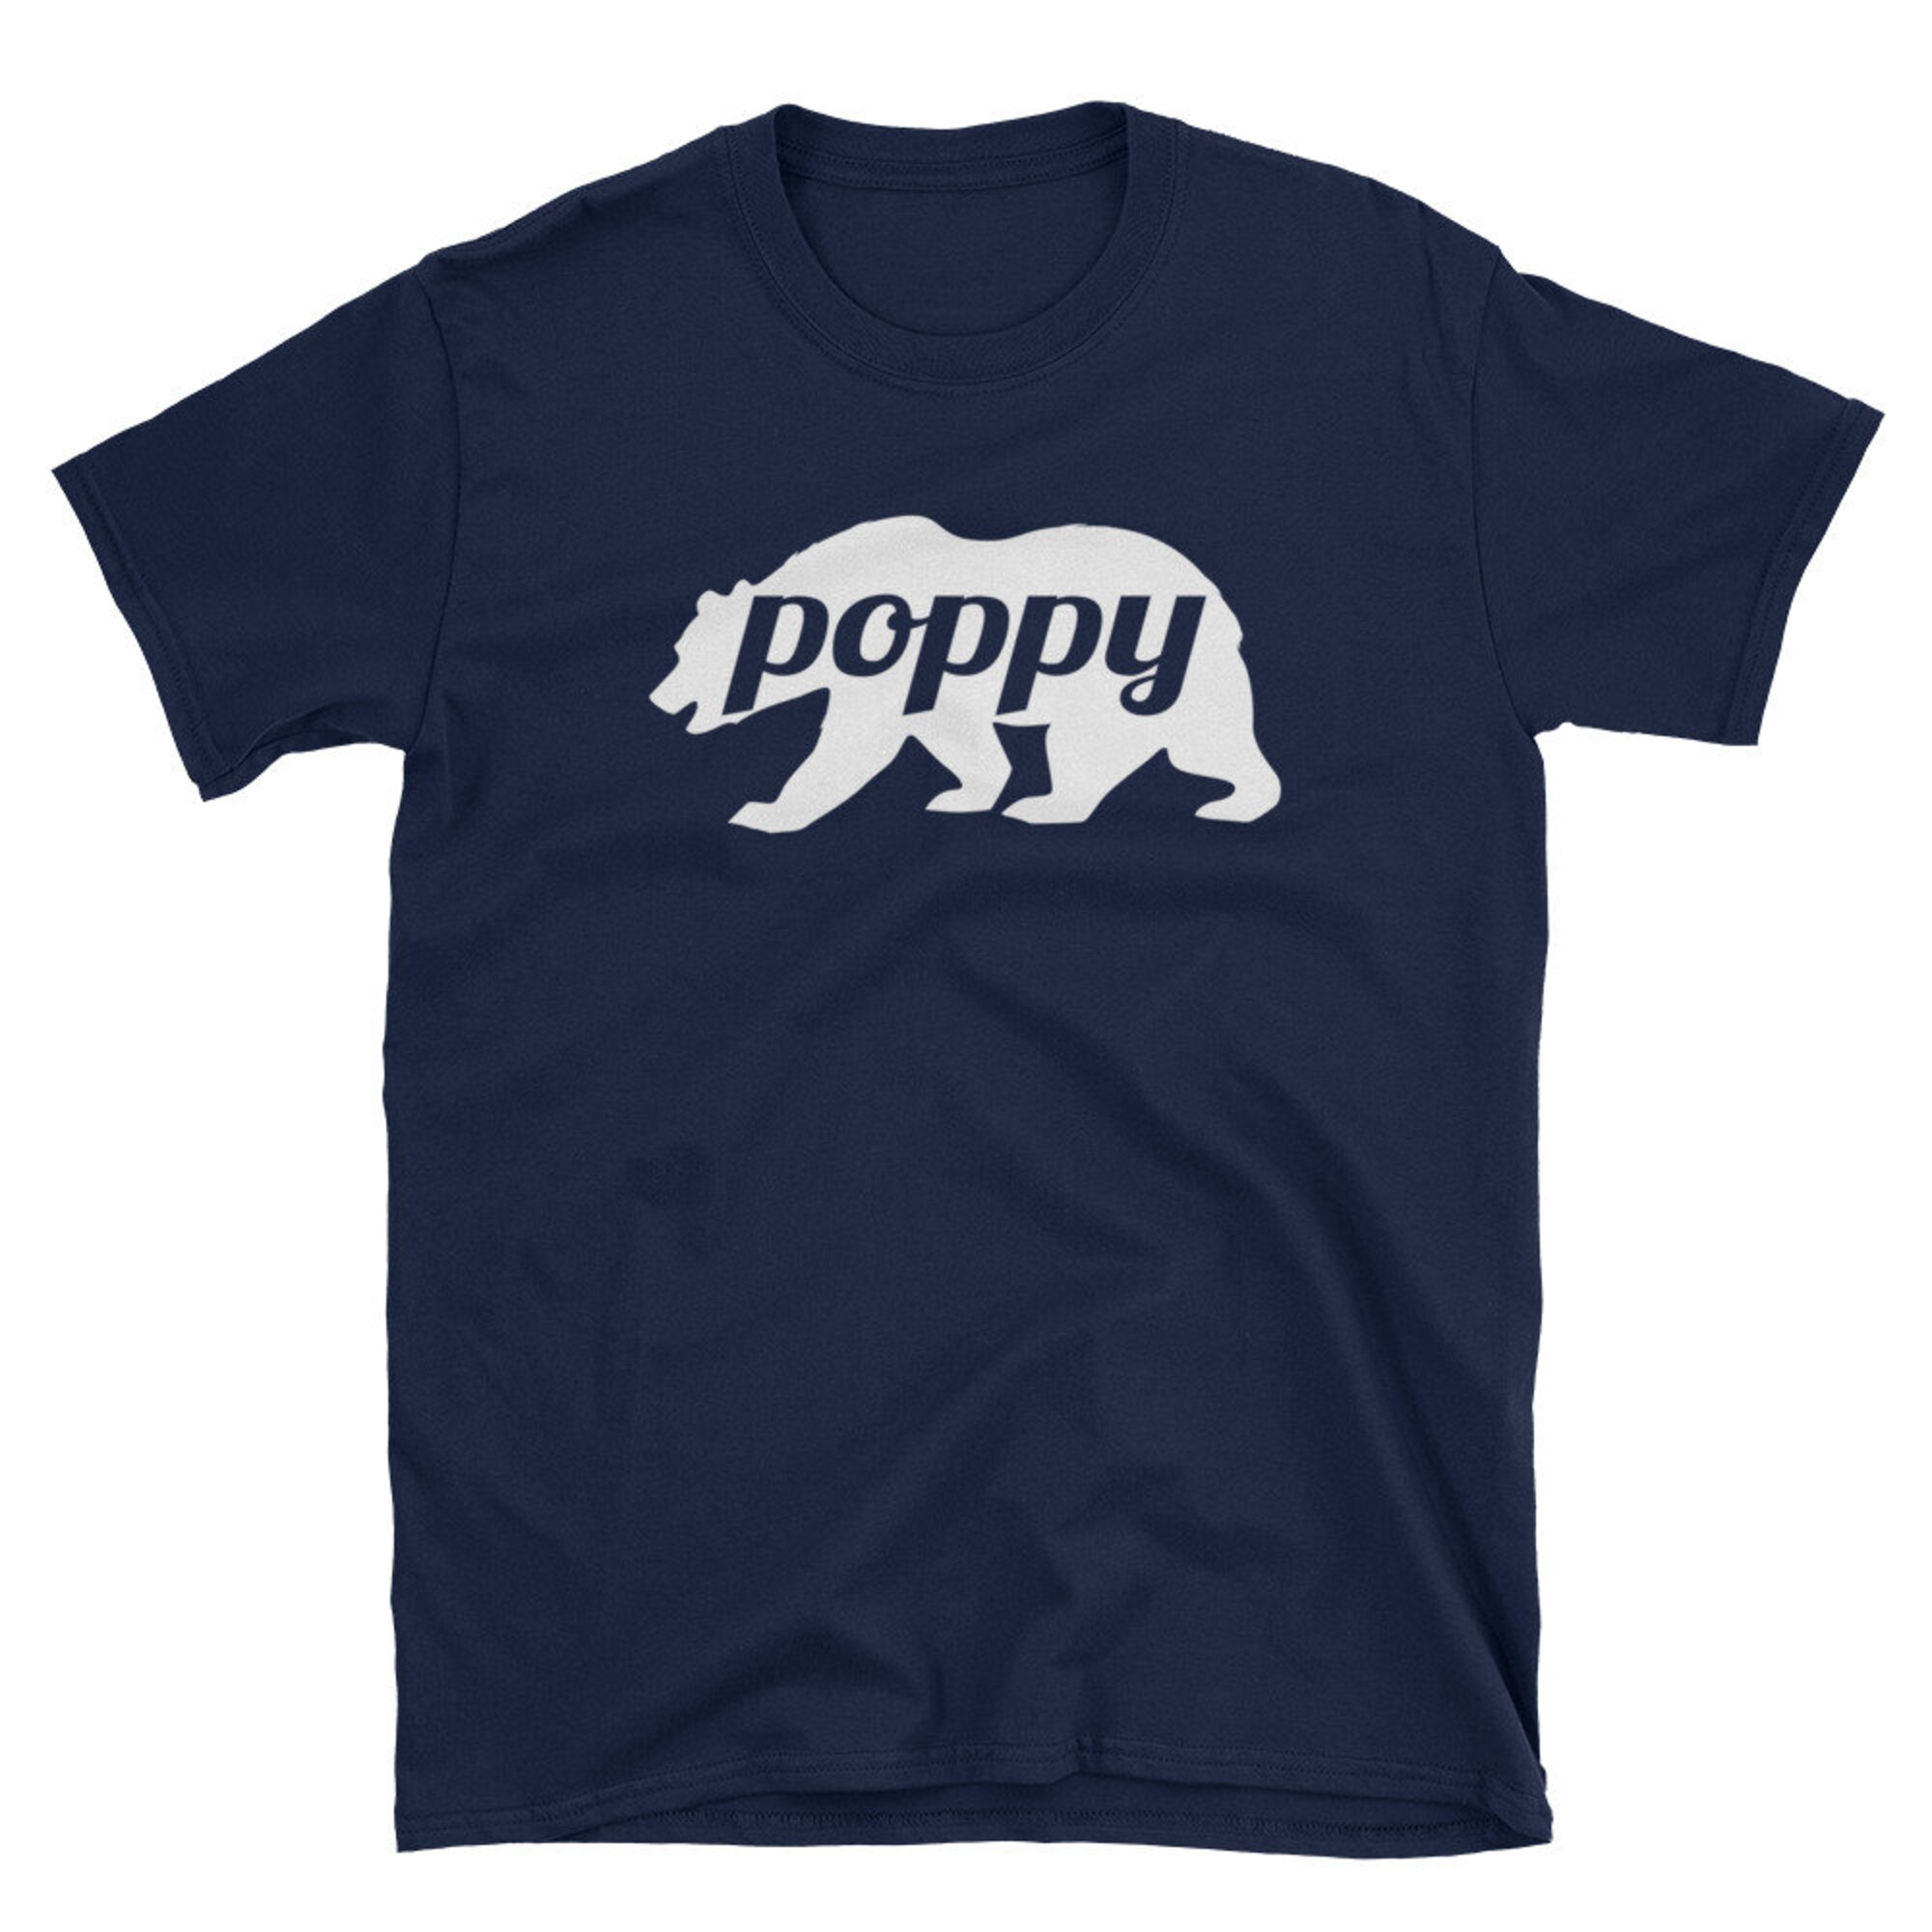 Discover Poppy Shirt - Poppy Bear Shirt - Poppy Gifts - Grandpa Short-Sleeve Unisex T-Shirt